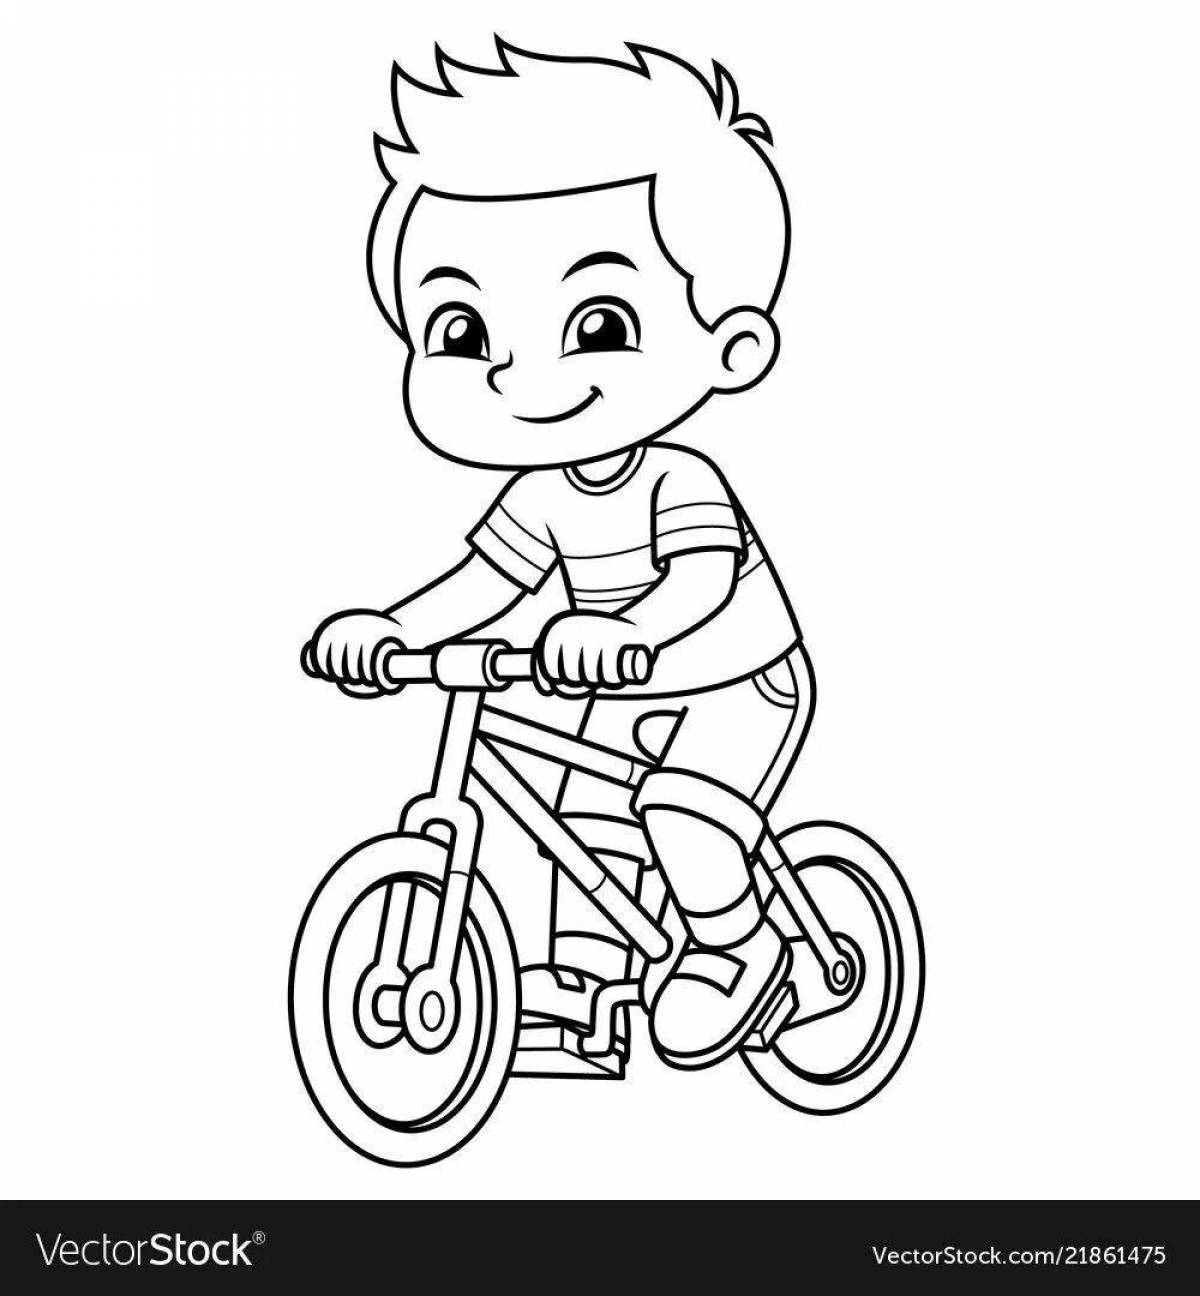 Boy on bike #16